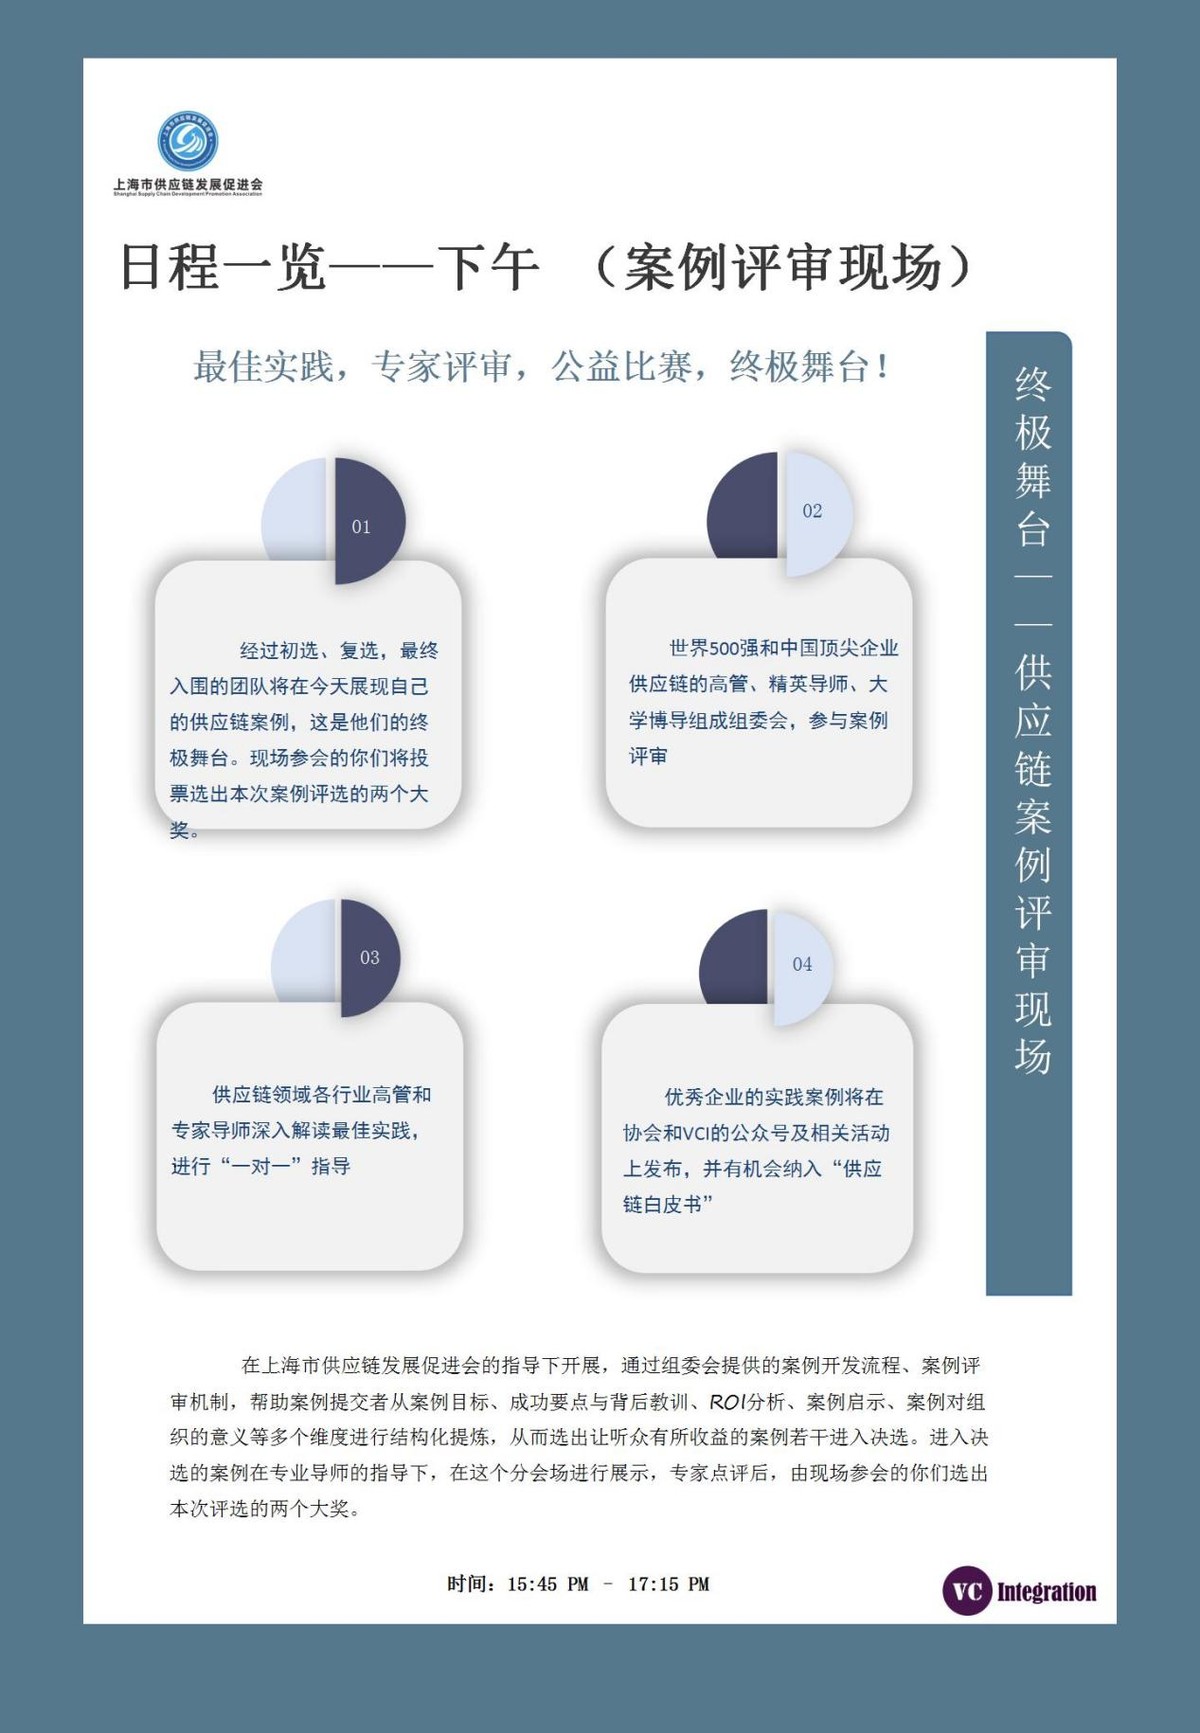 上海供应链发展促进会成立，2021上海韦司埃供应链峰会即将召开